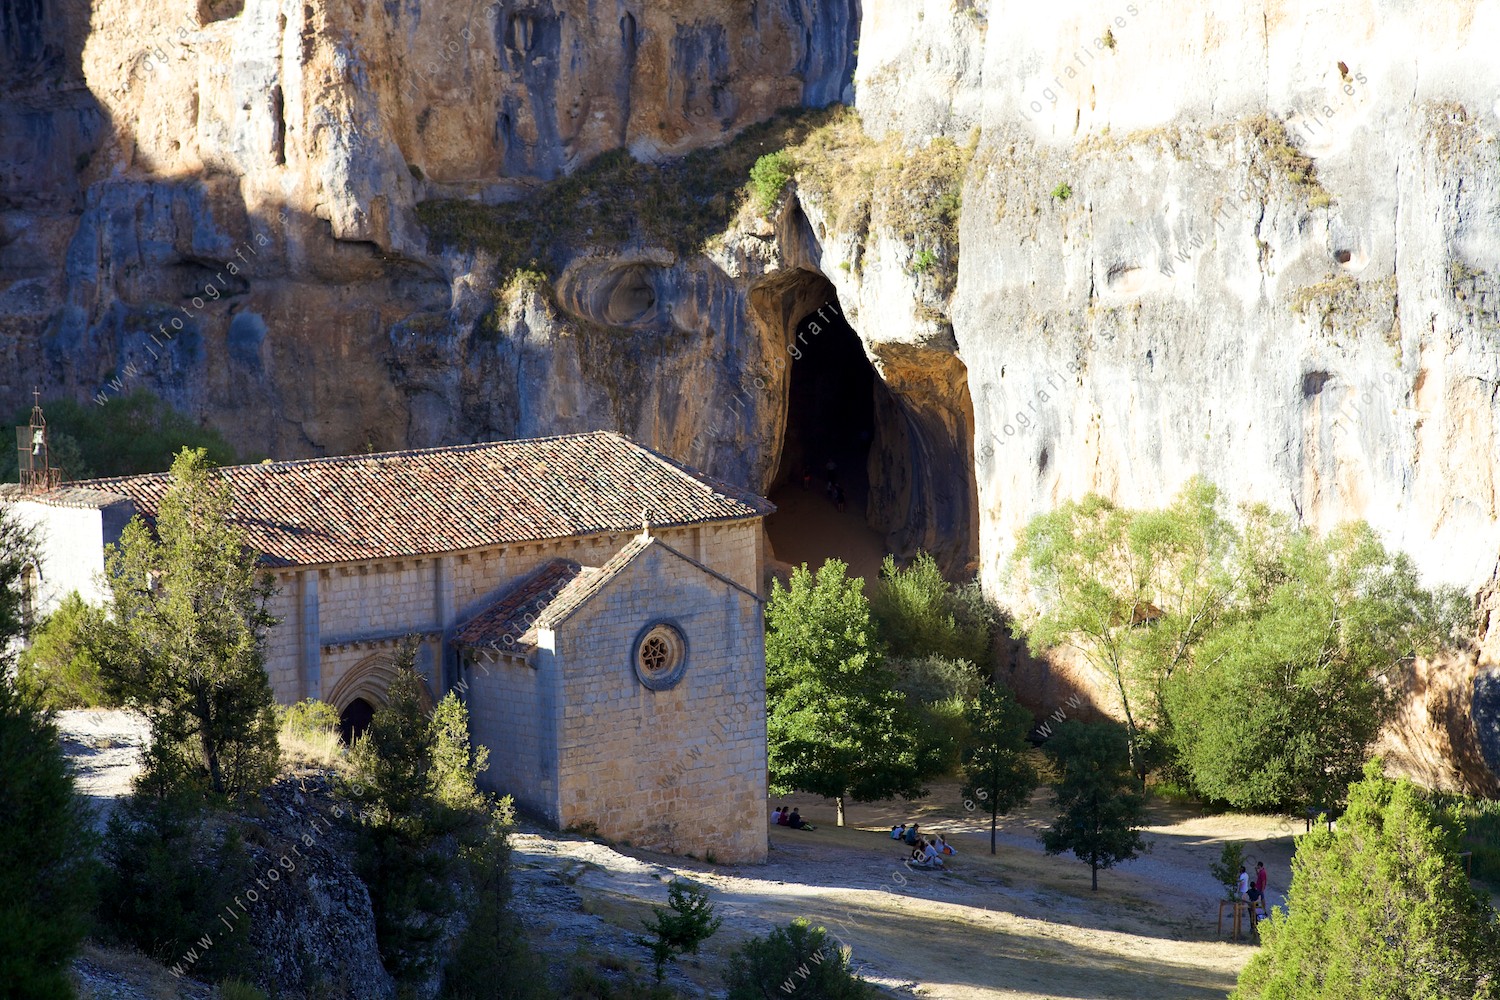 La ermita de San Bartolomé, en el cañón del Río Lobos con la cueva frente a ella.